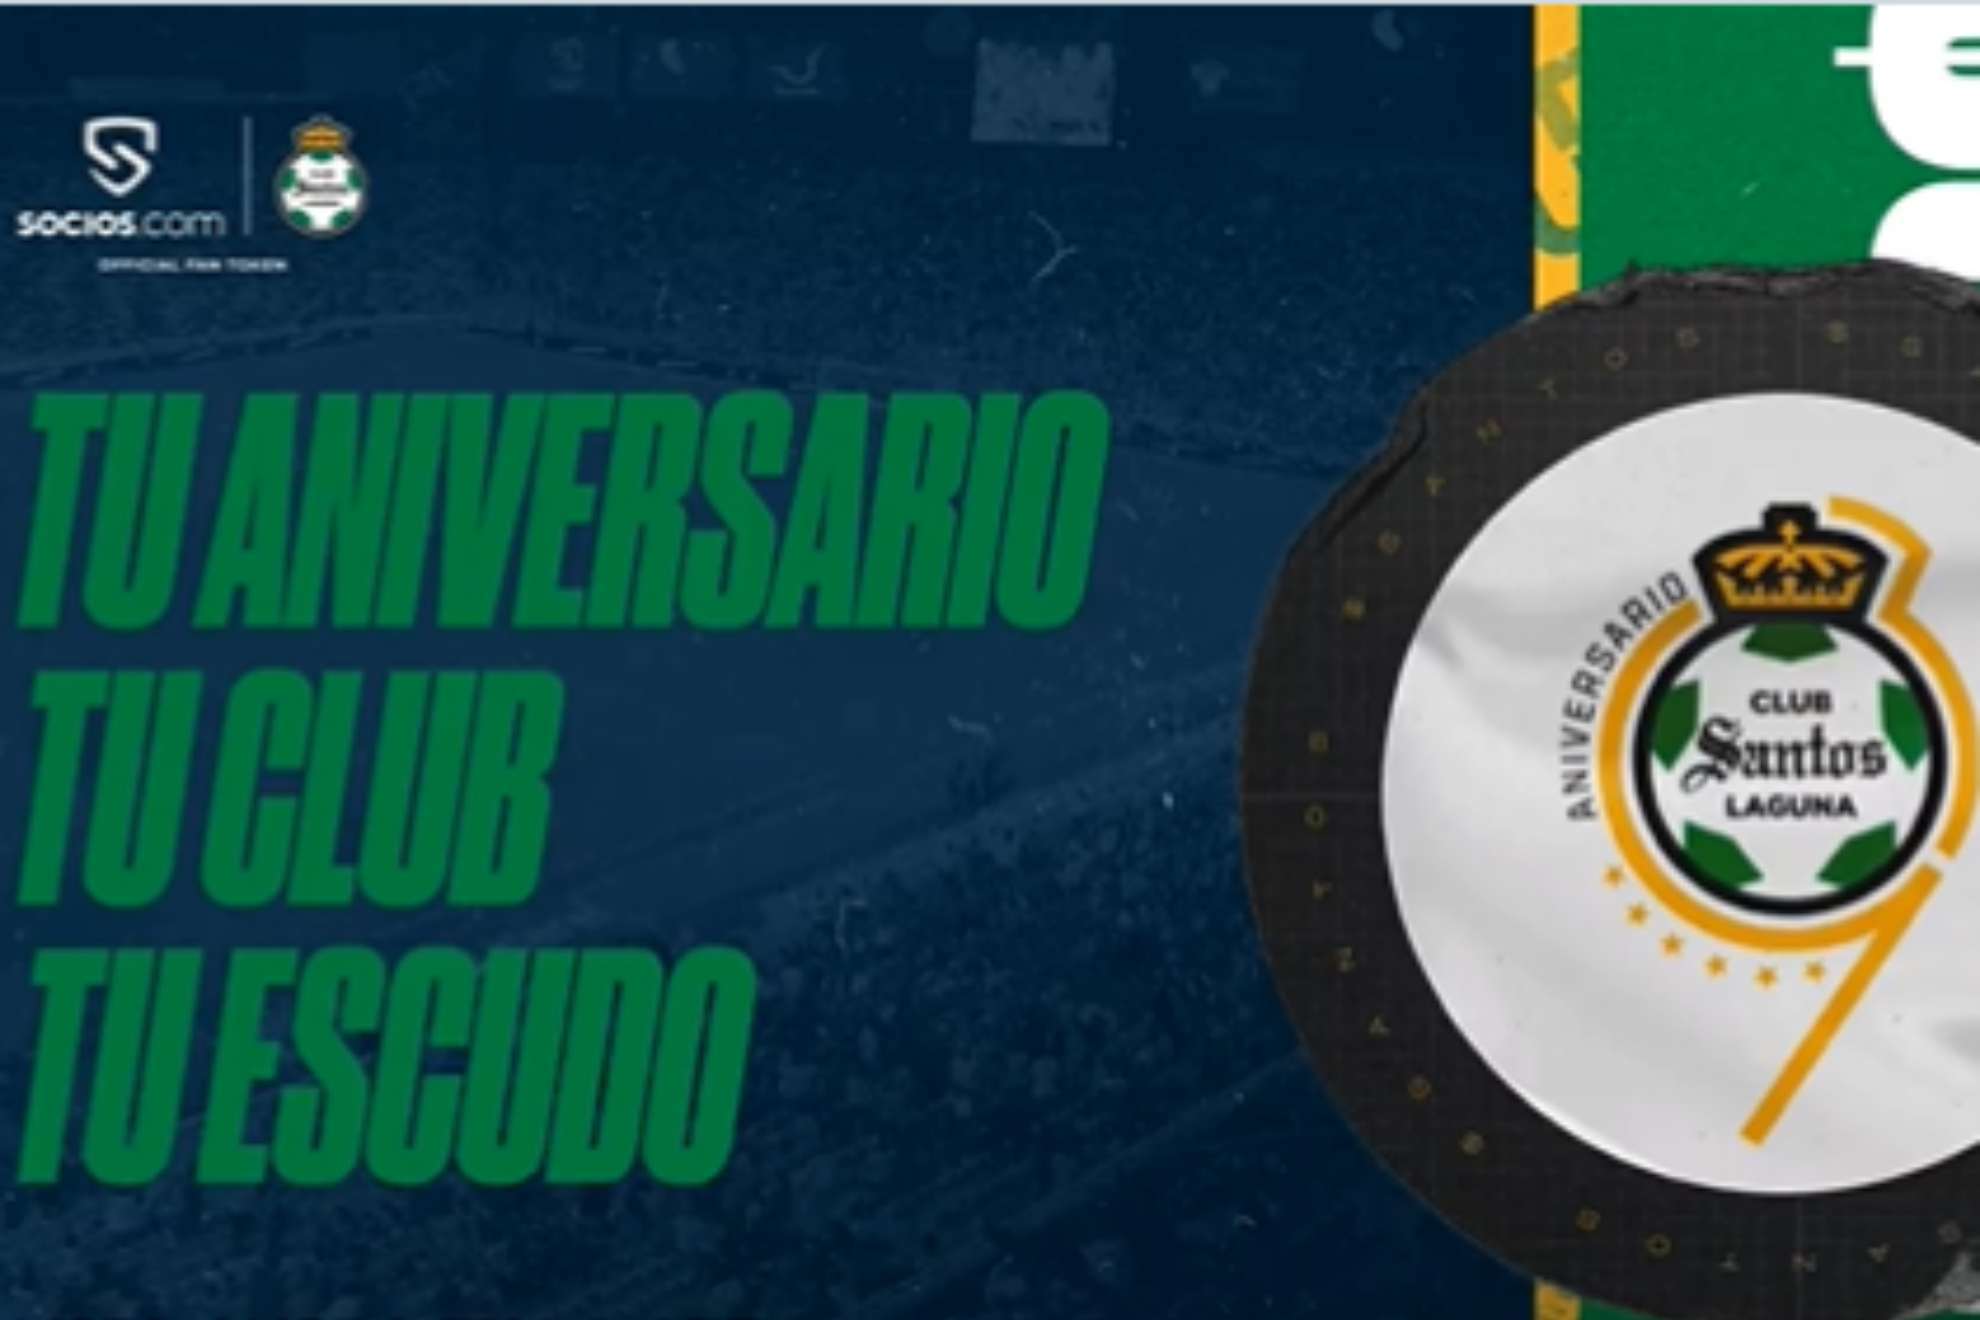 Club Santos Laguna and Socios.com allow fans to choose the club's 39th anniversary logo